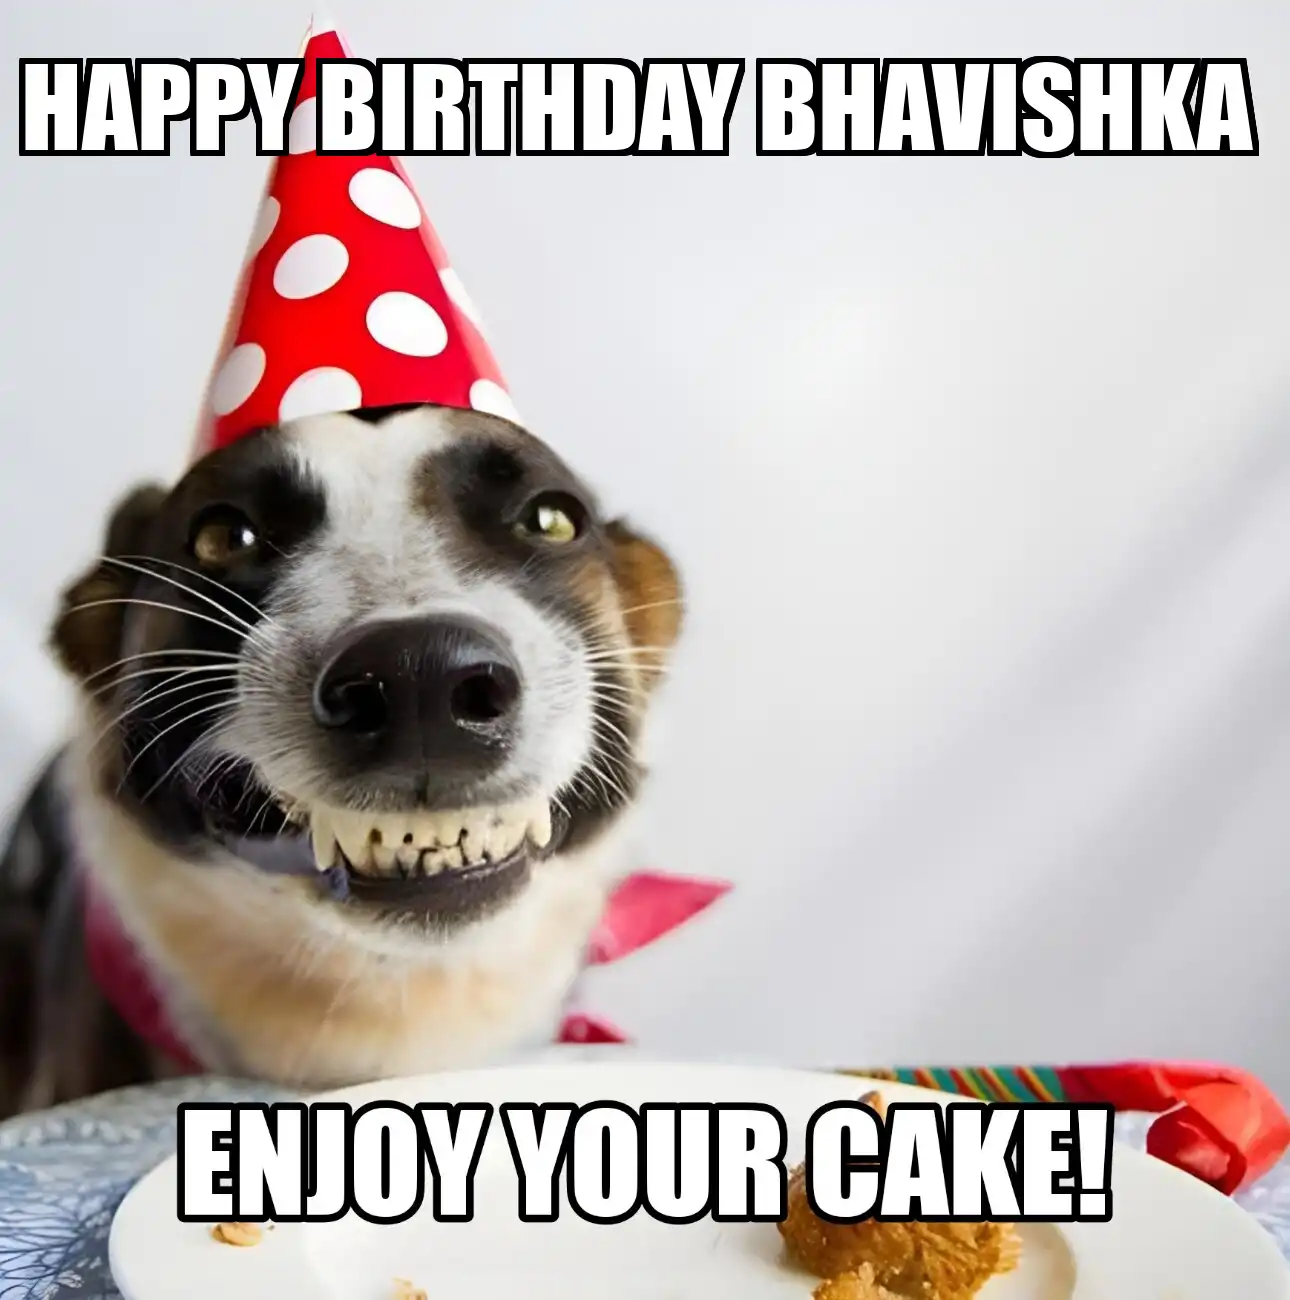 Happy Birthday Bhavishka Enjoy Your Cake Dog Meme